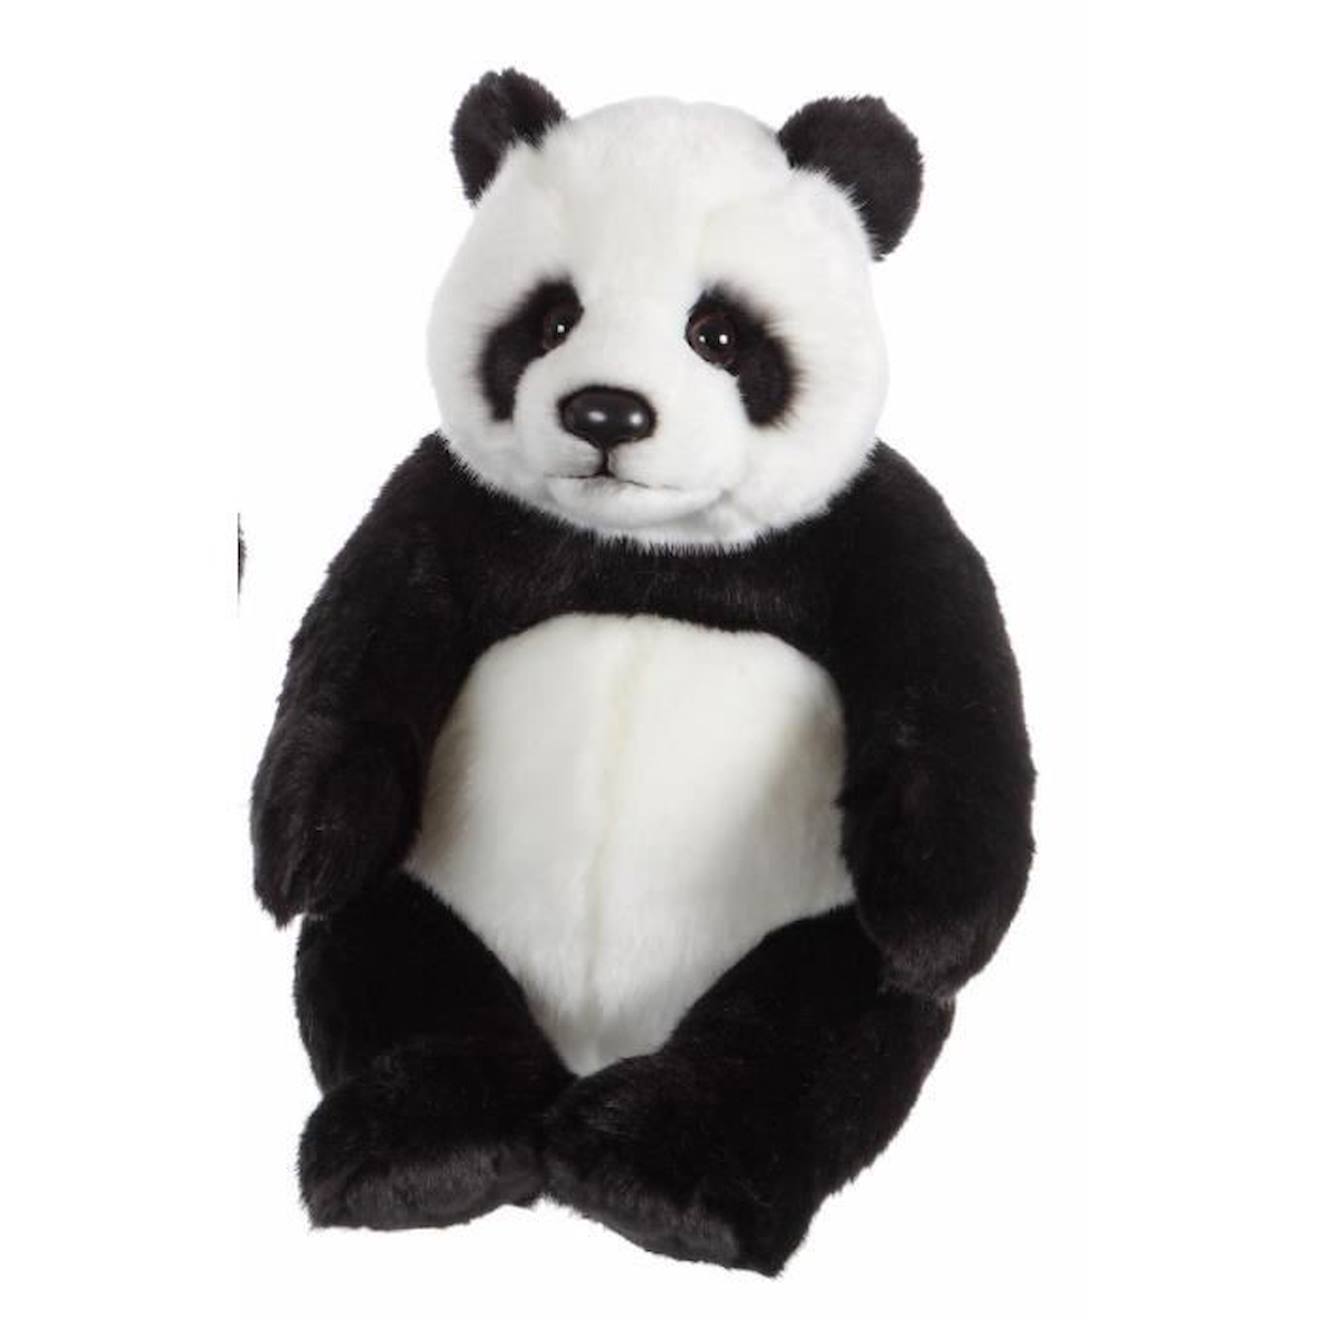 Peluche Panda - Gipsy - 24 Cm - Mixte - Noir Et Blanc - Naissance - Enfant - Intérieur Noir